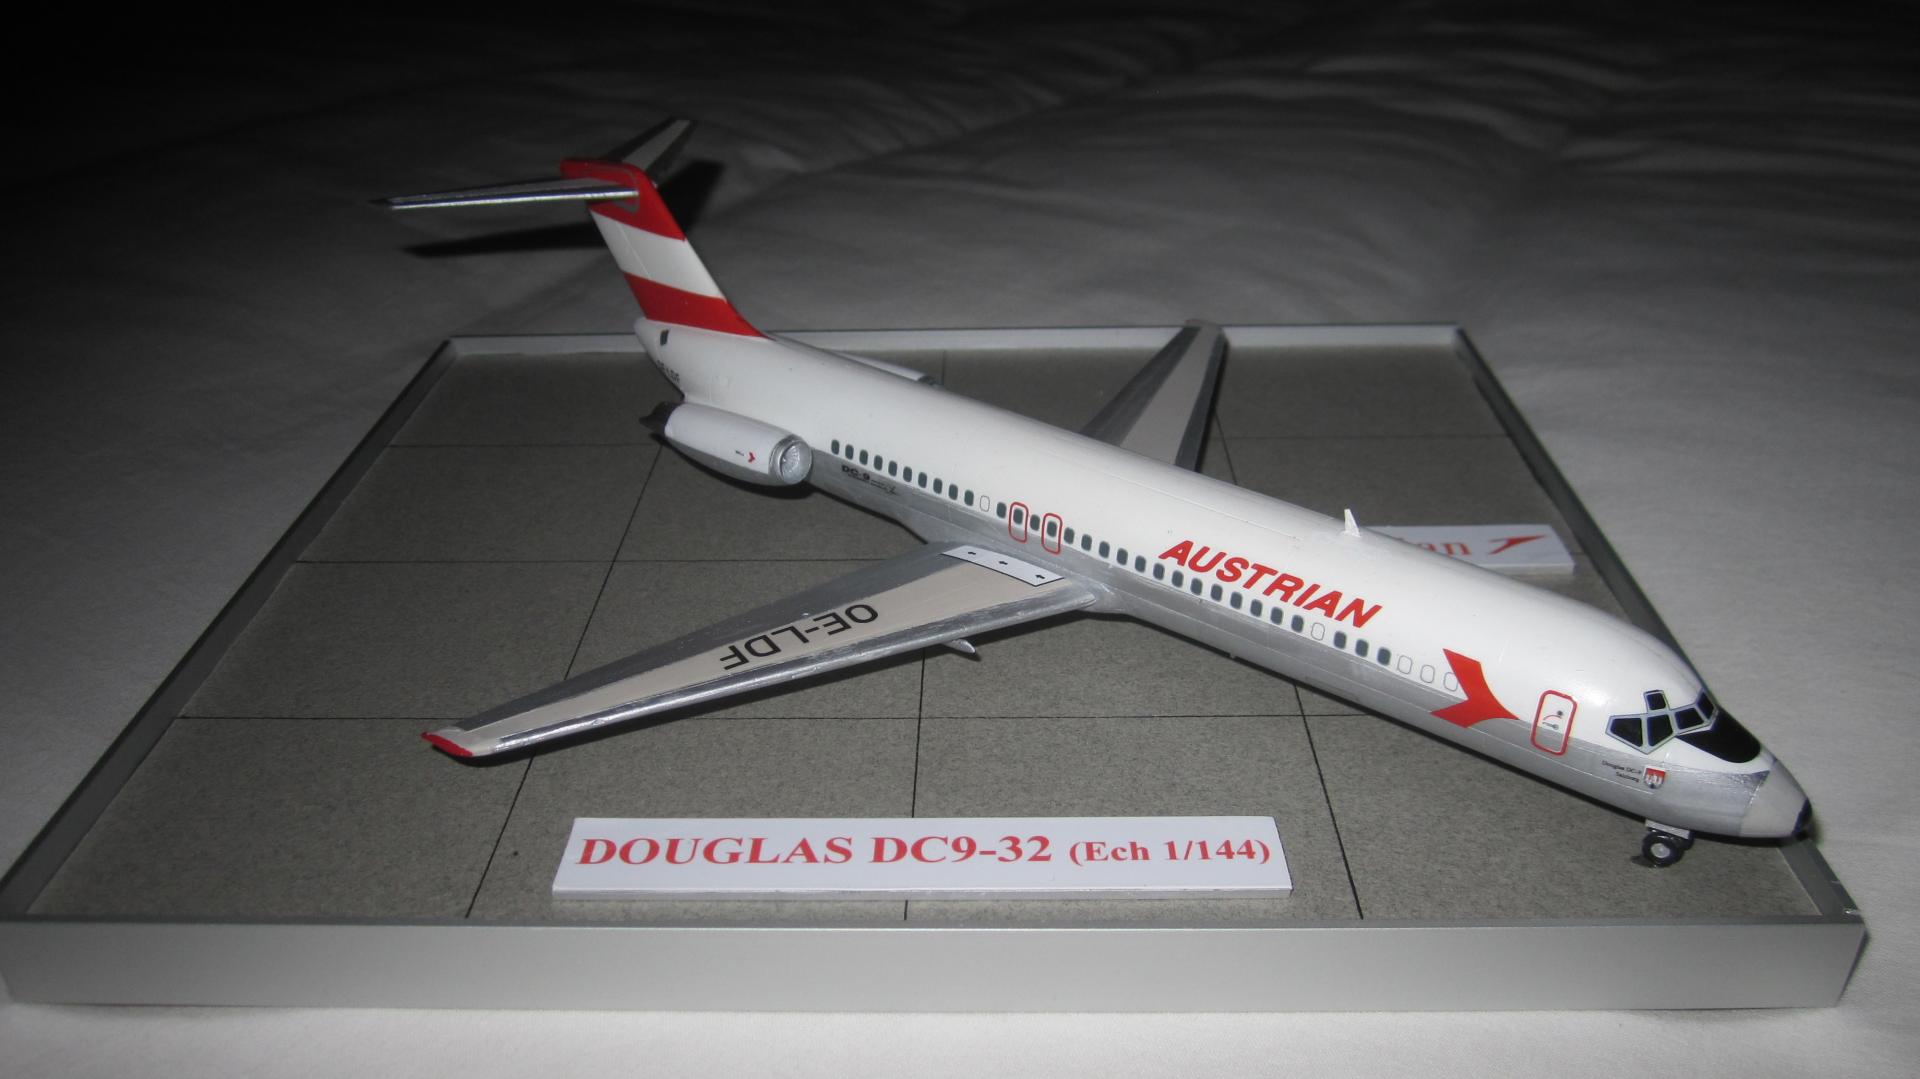 DOUGLAS DC9-32